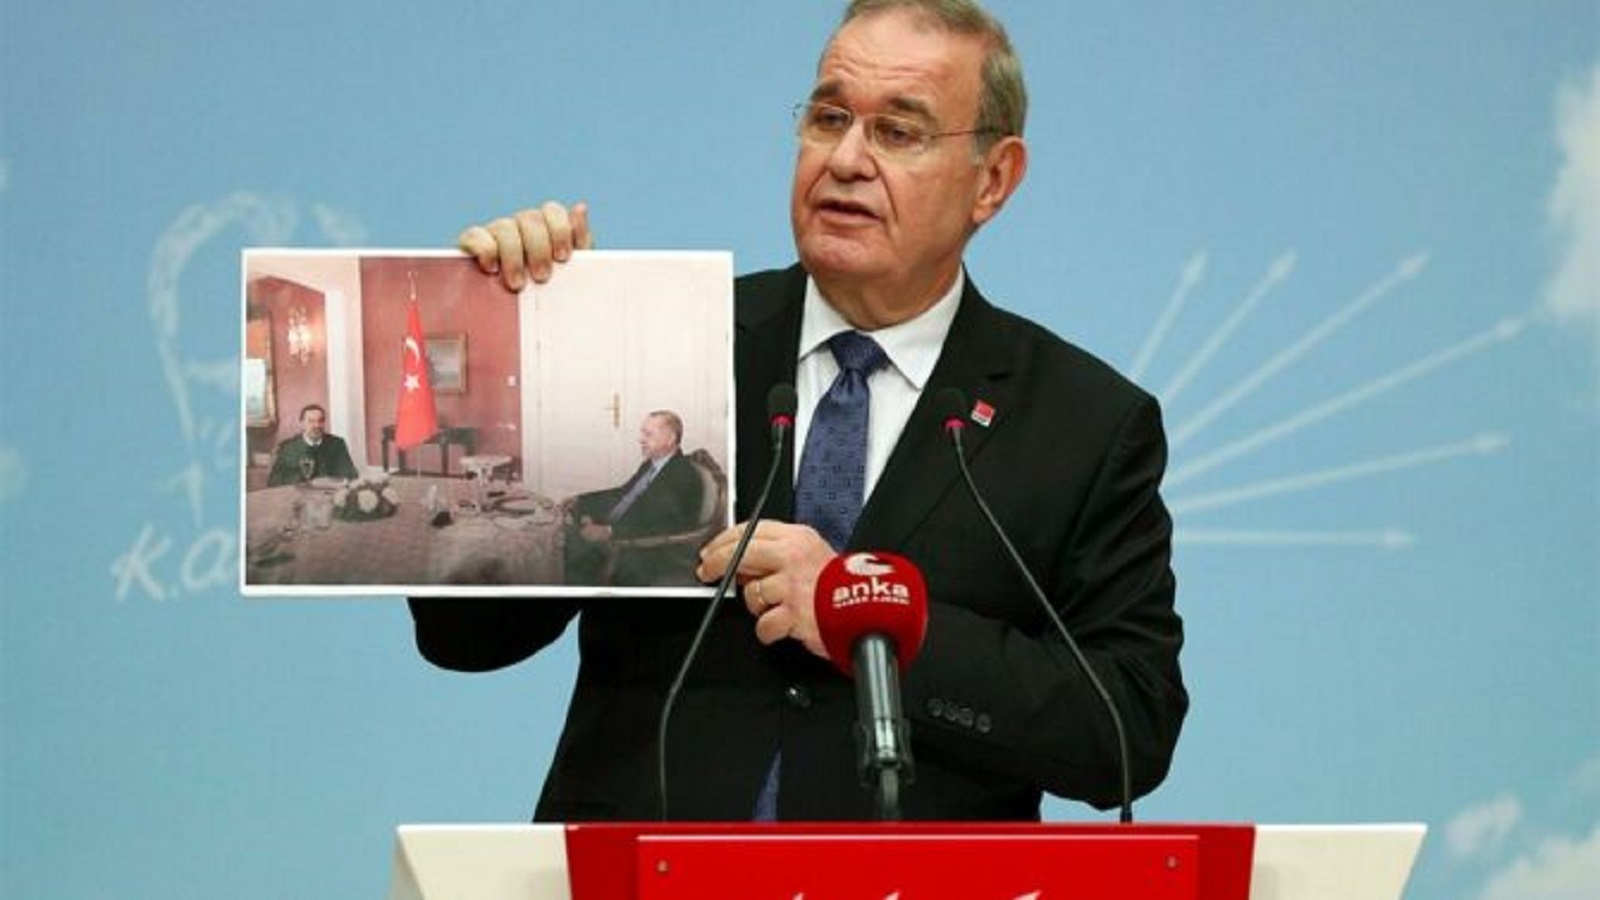 المعارض التركي فائق أوزتراك يرفع صورة لقاء الحريري وارودغان ويقول: "هذه الصورة ليست عادية"